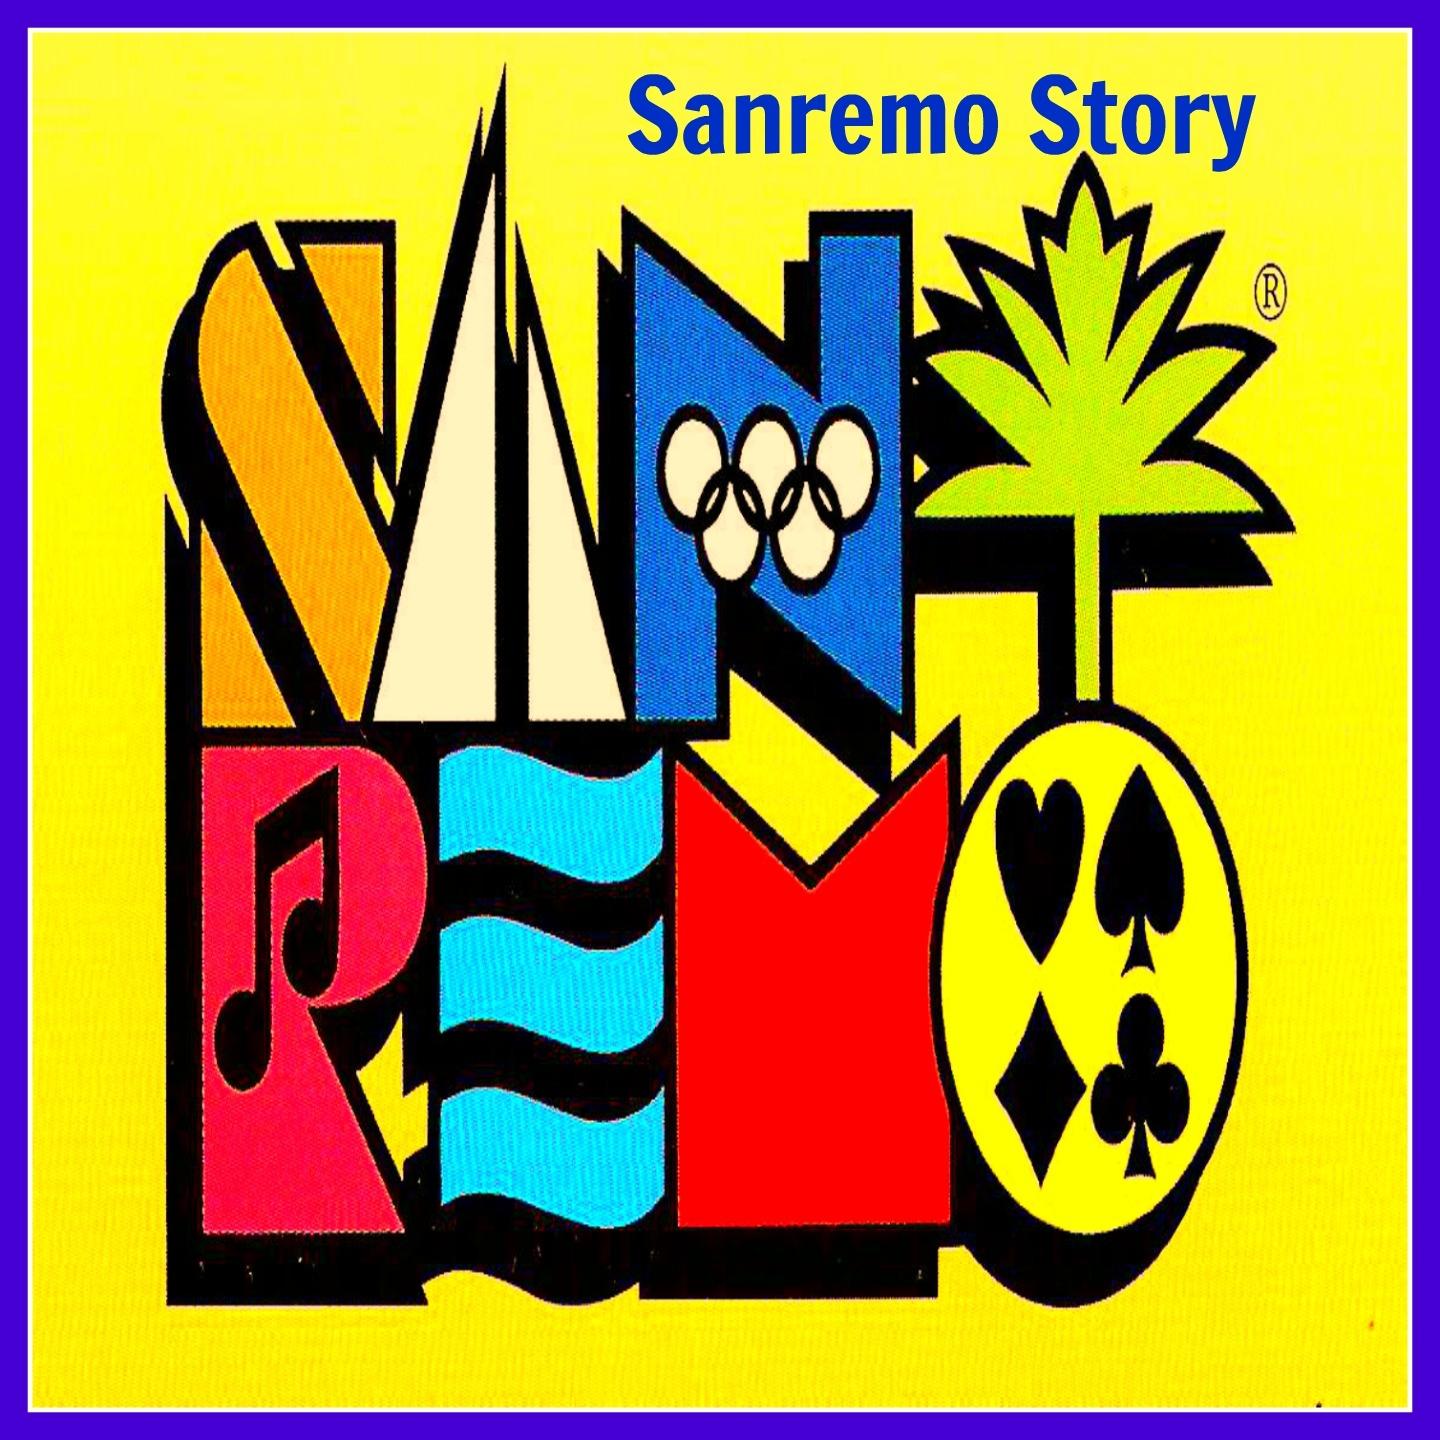 Nessuno mi puo giudicare Sanremo 1966